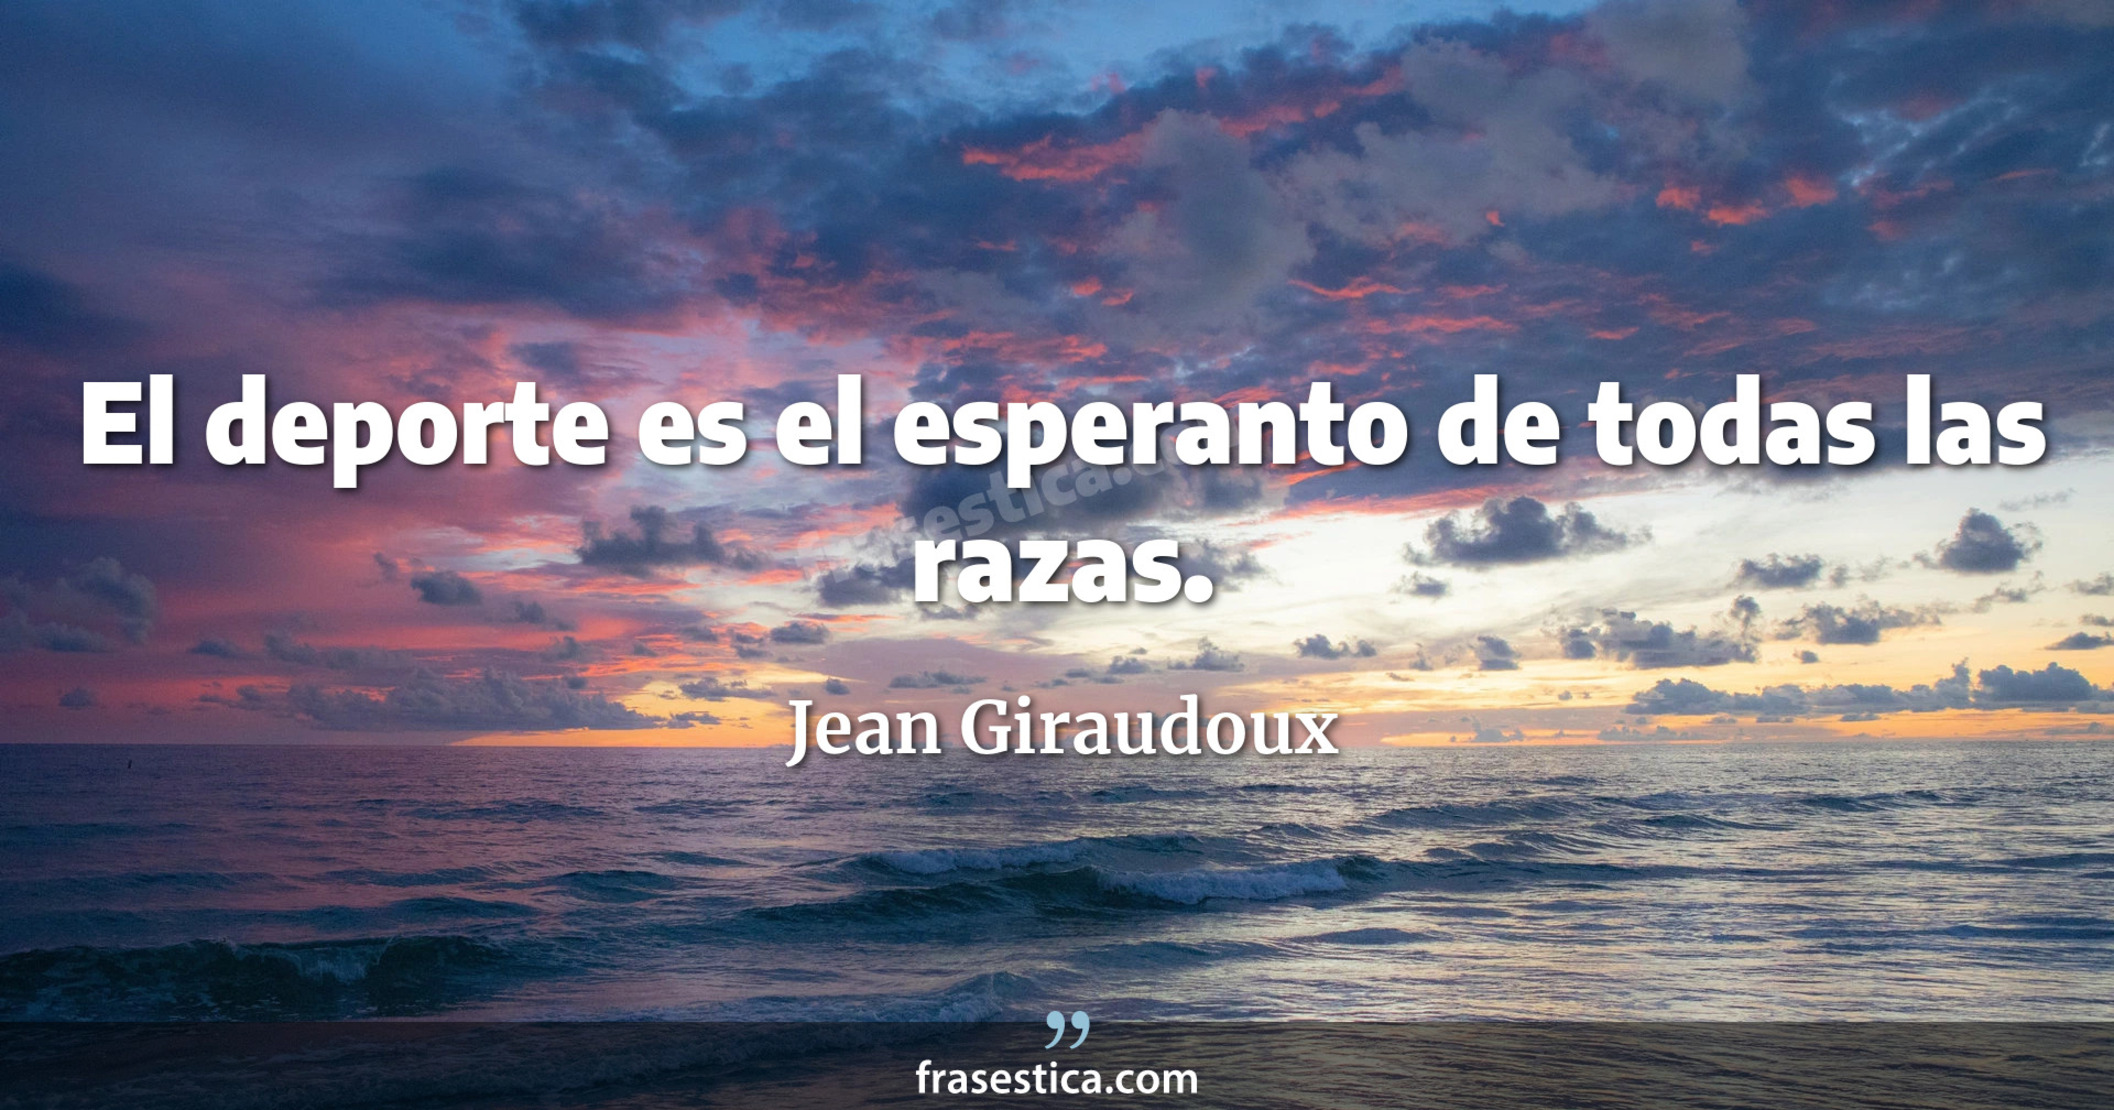 El deporte es el esperanto de todas las razas. - Jean Giraudoux